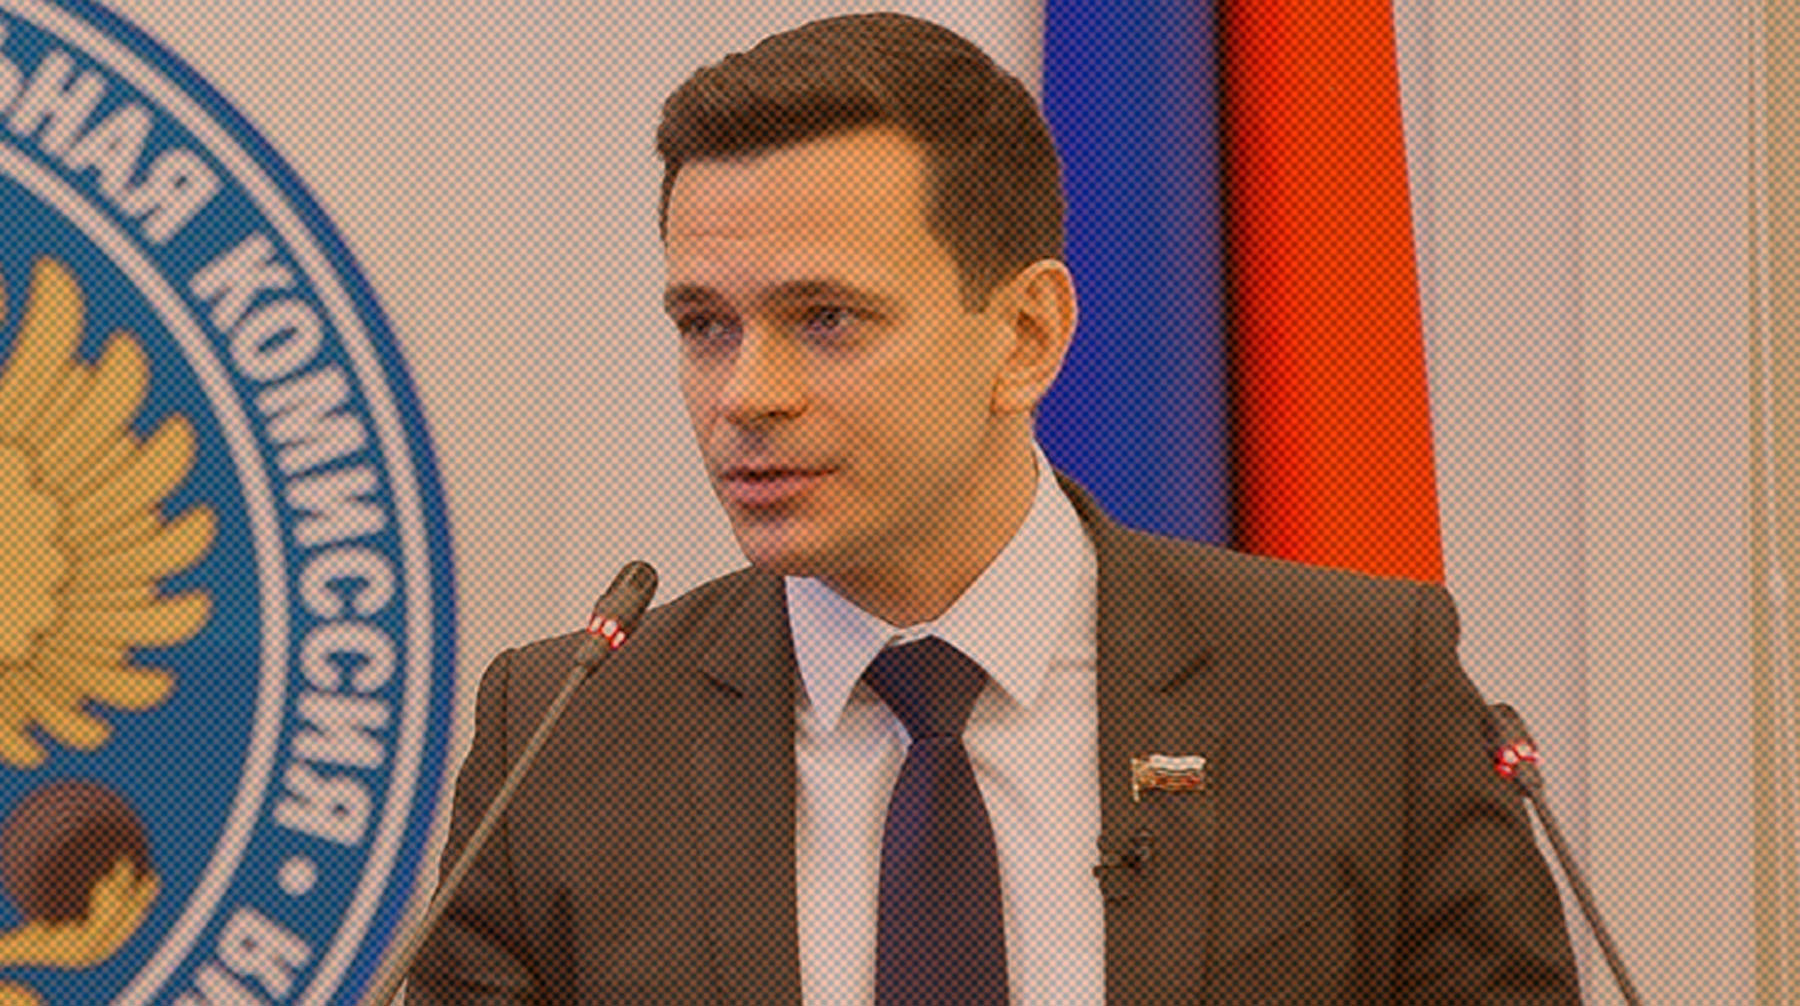 Ранее глава муниципального округа заявил, что сложит полномочия из-за давления прокуратуры Илья Яшин